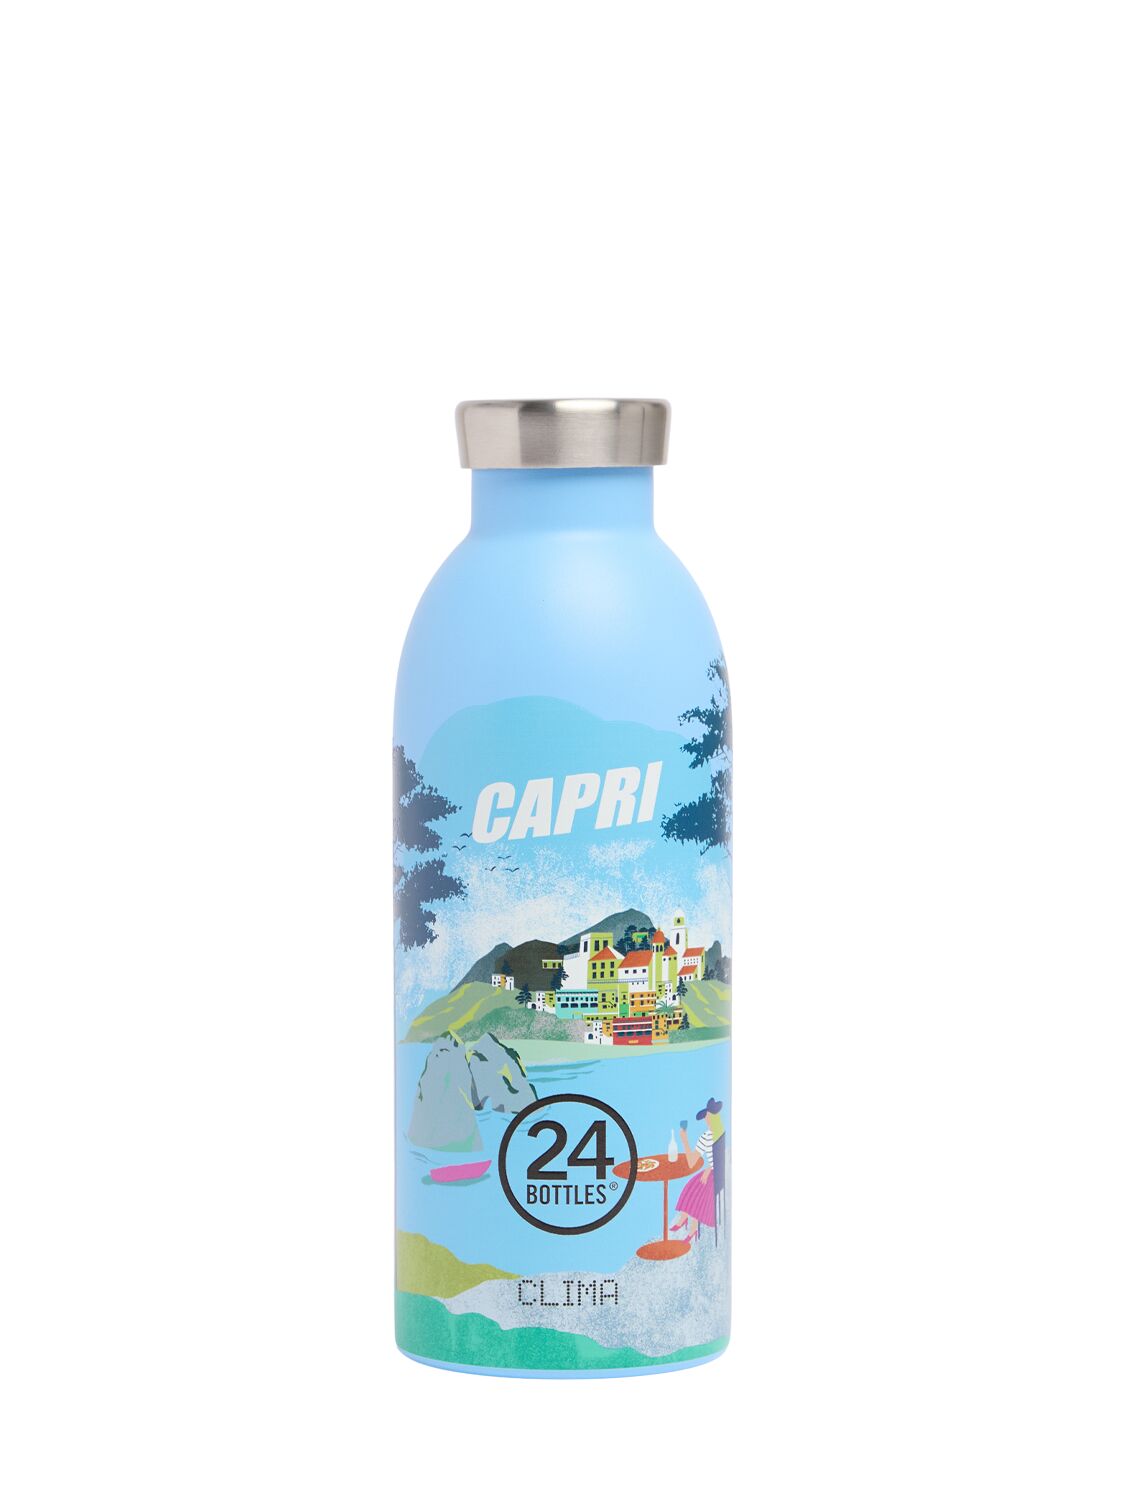 Casa Botella Capri Clima 500ml Unique - 24BOTTLES - Modalova